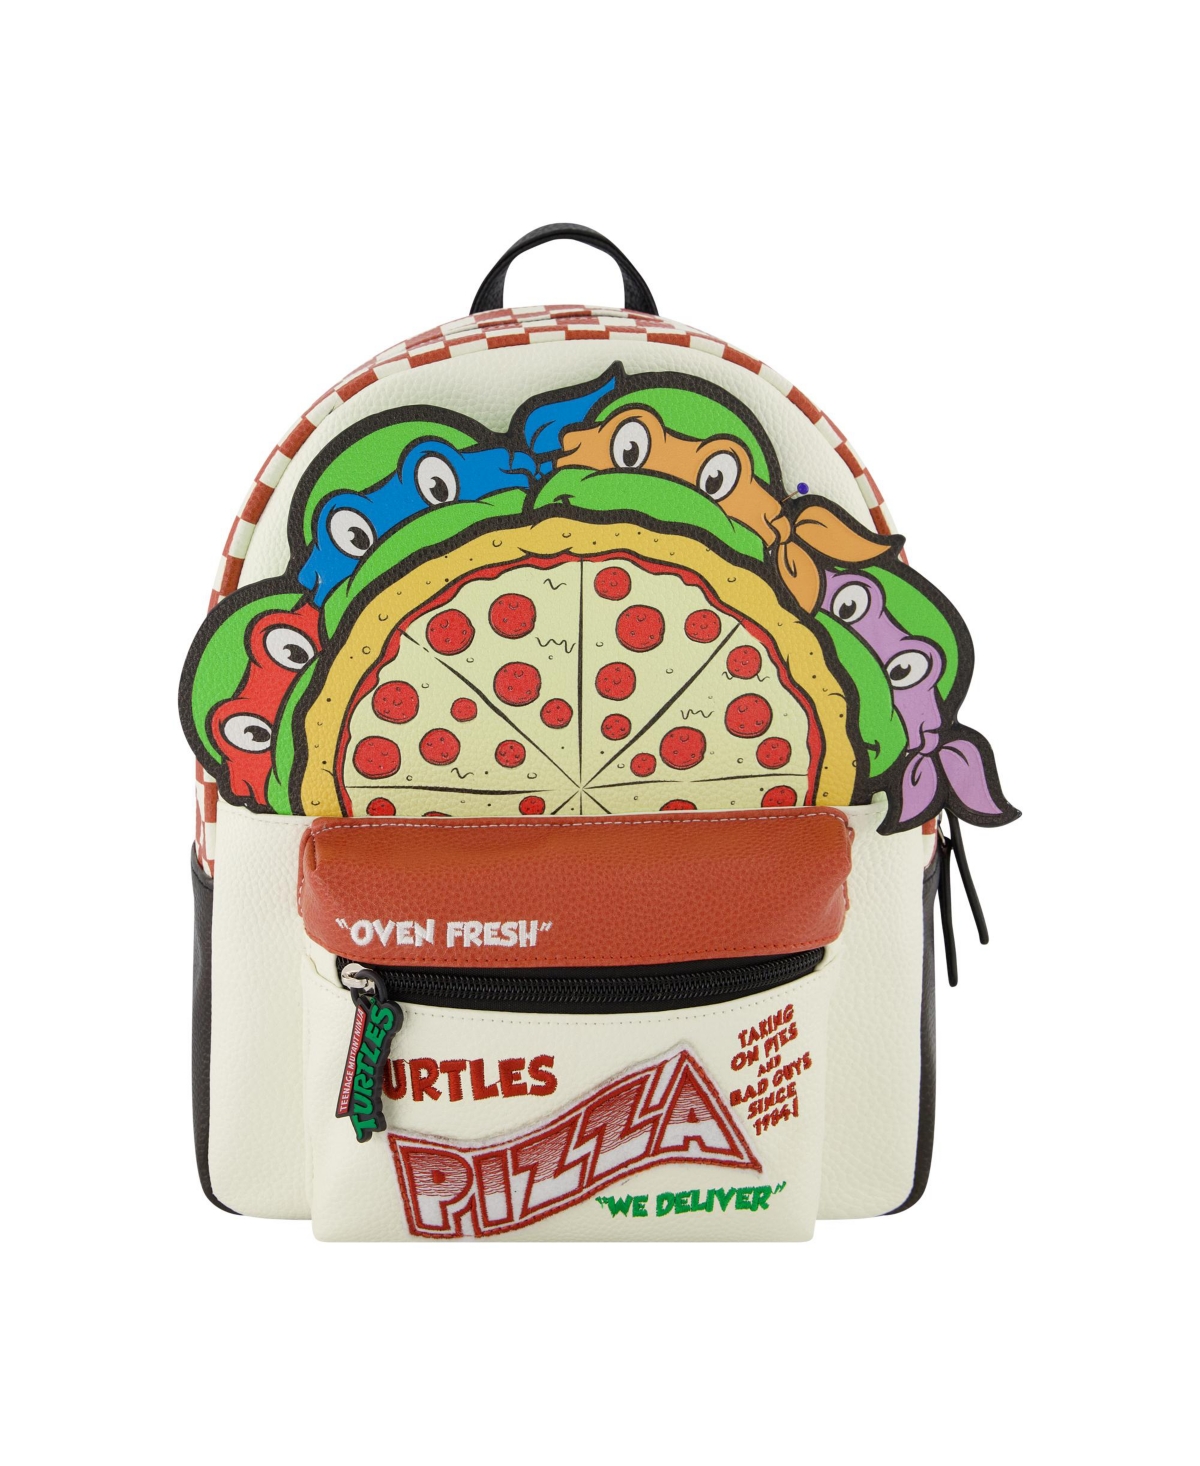 Mini Backpack Teenage Mutant Ninja Turtles Backpack - Multi